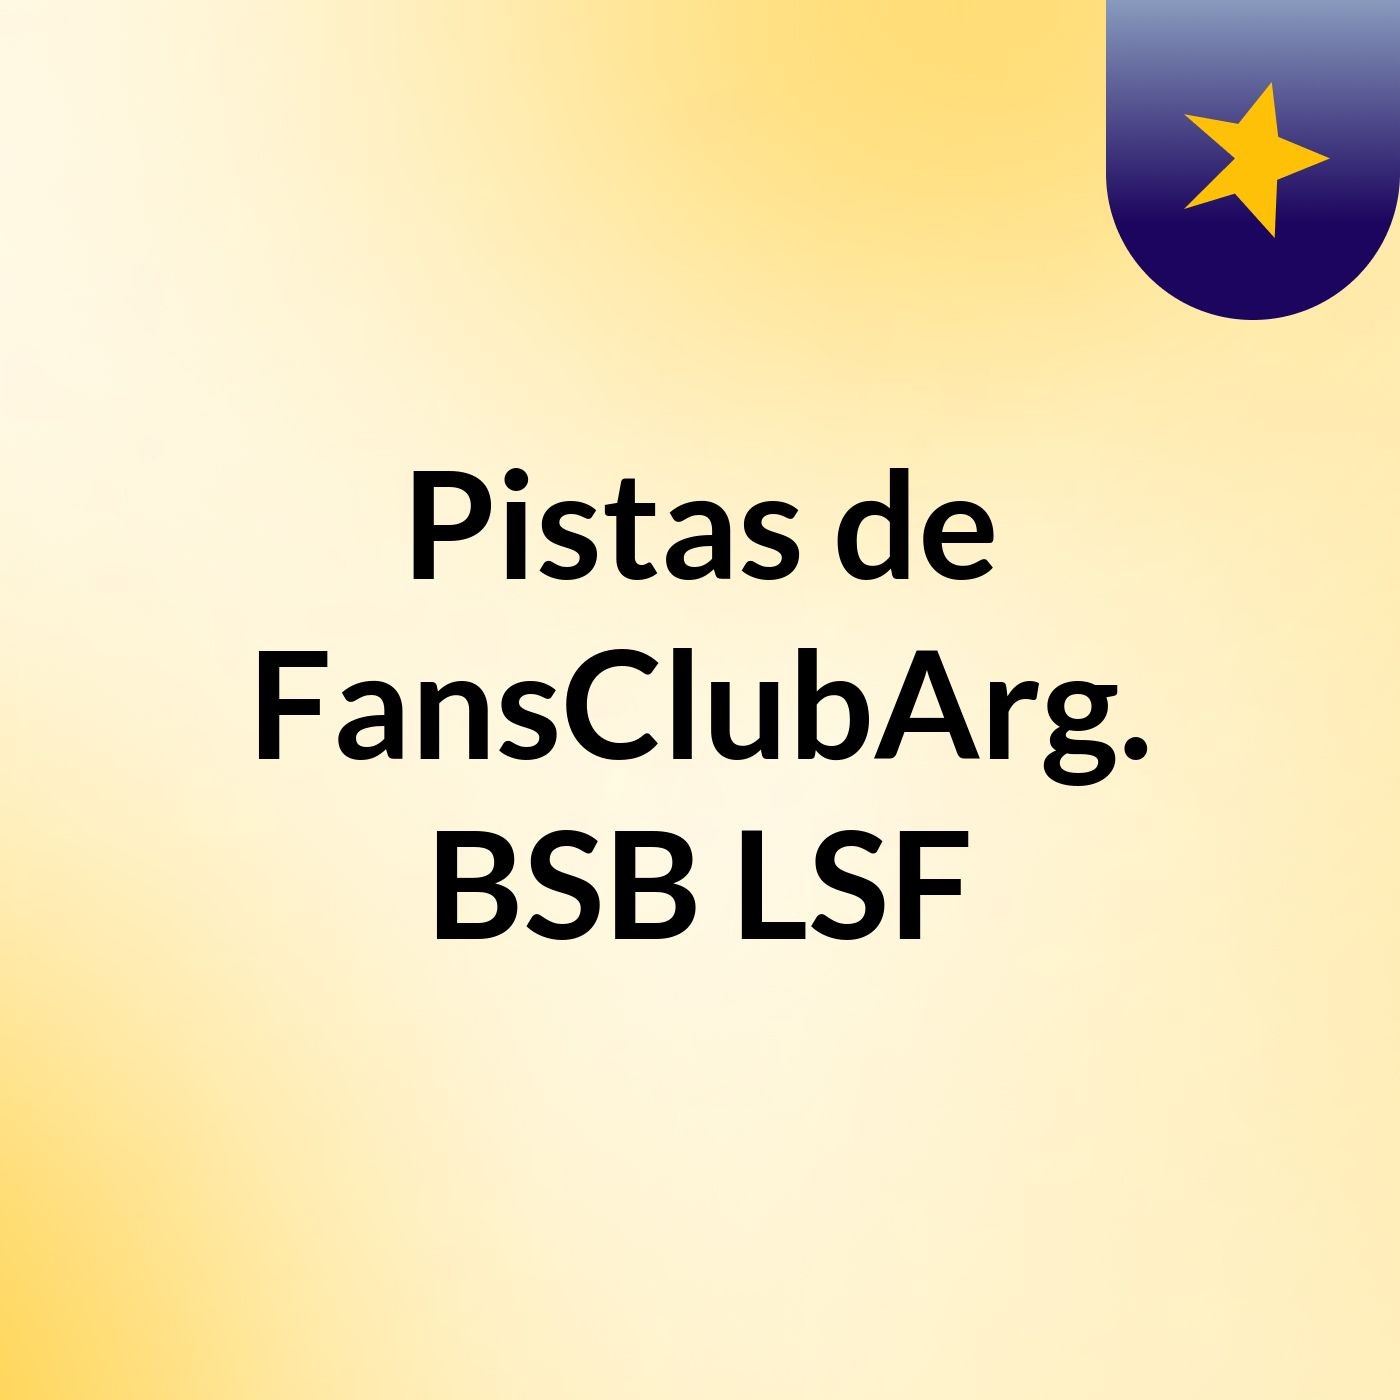 Dale Spreaker Portate Bien - Pistas de FansClubArg. BSB LSF